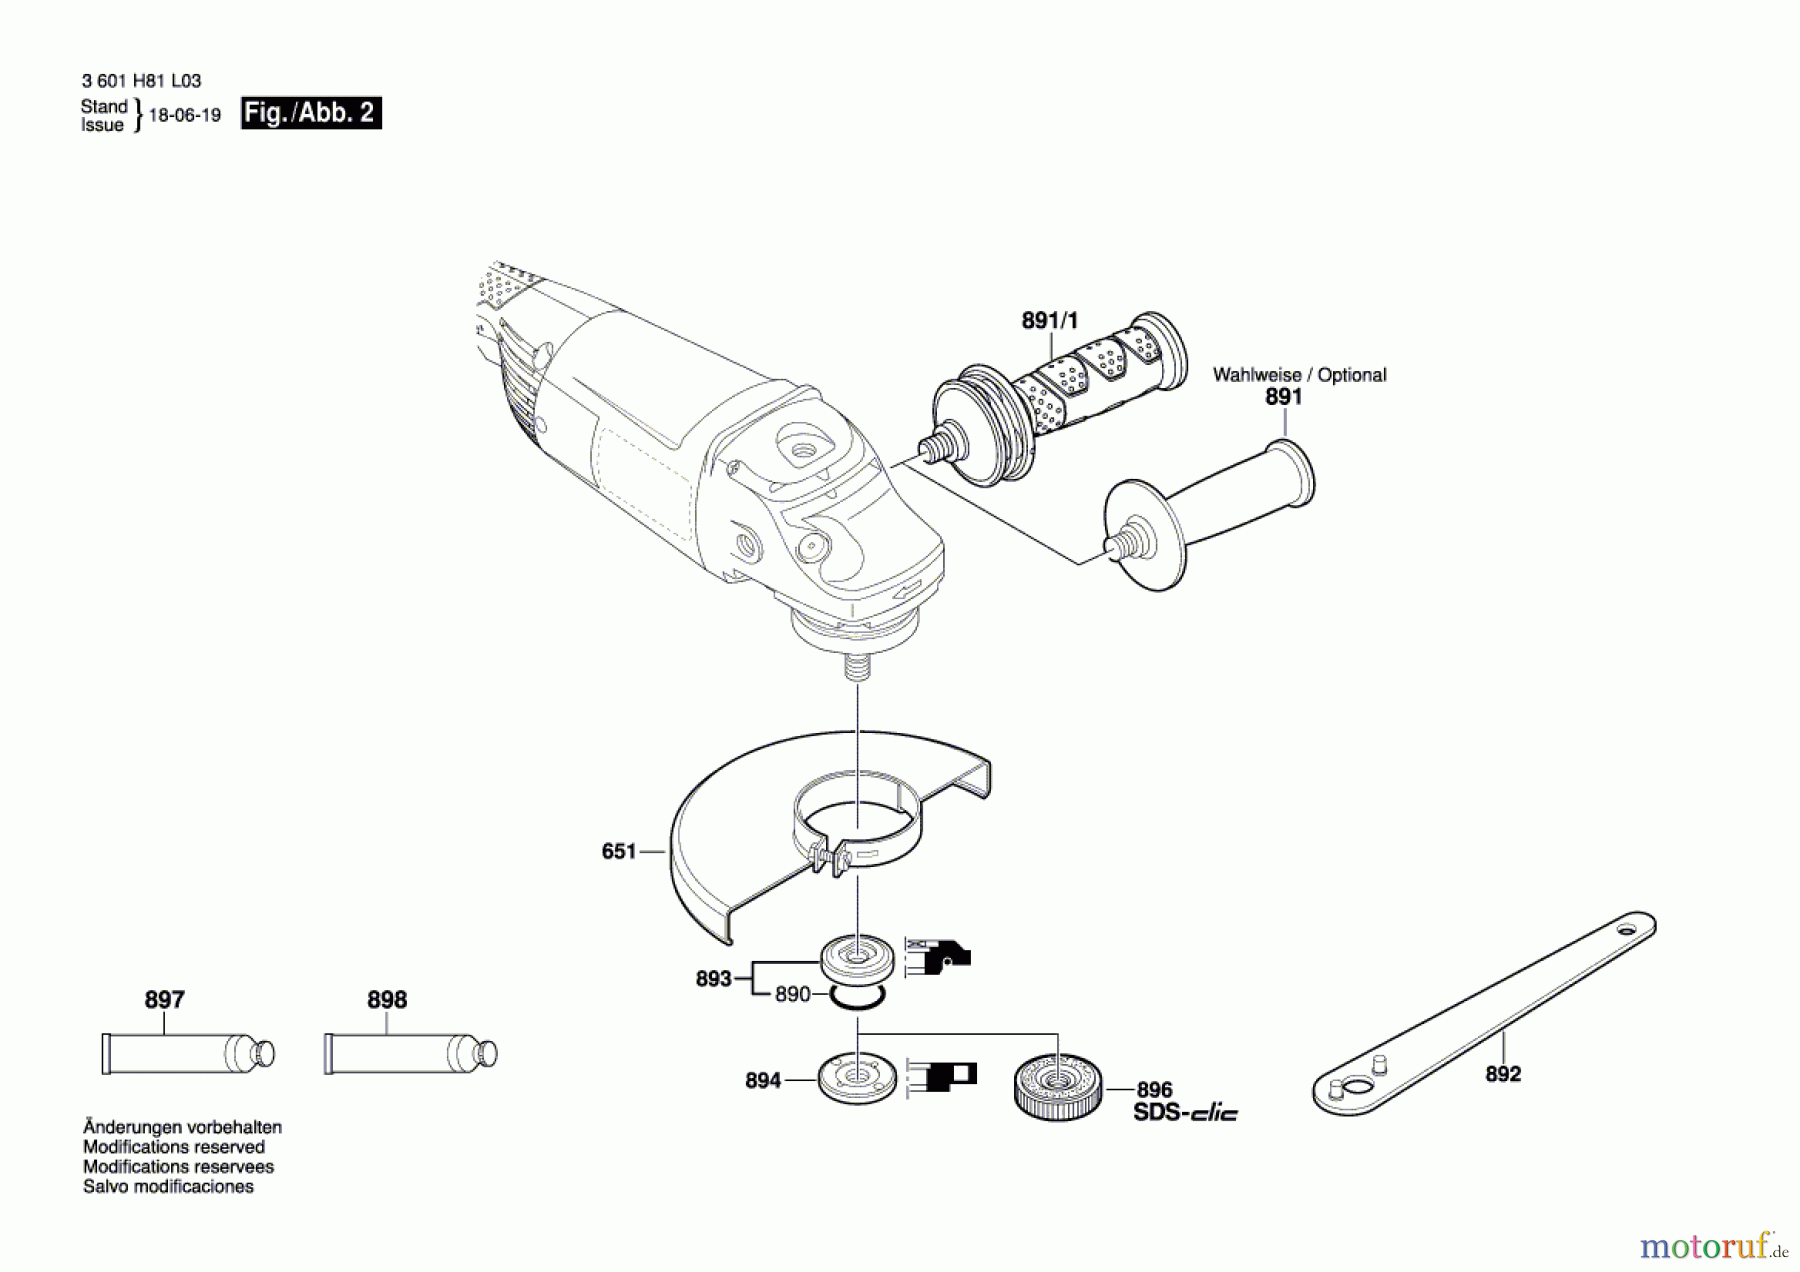  Bosch Werkzeug Winkelschleifer GWS 22-180 H Seite 2